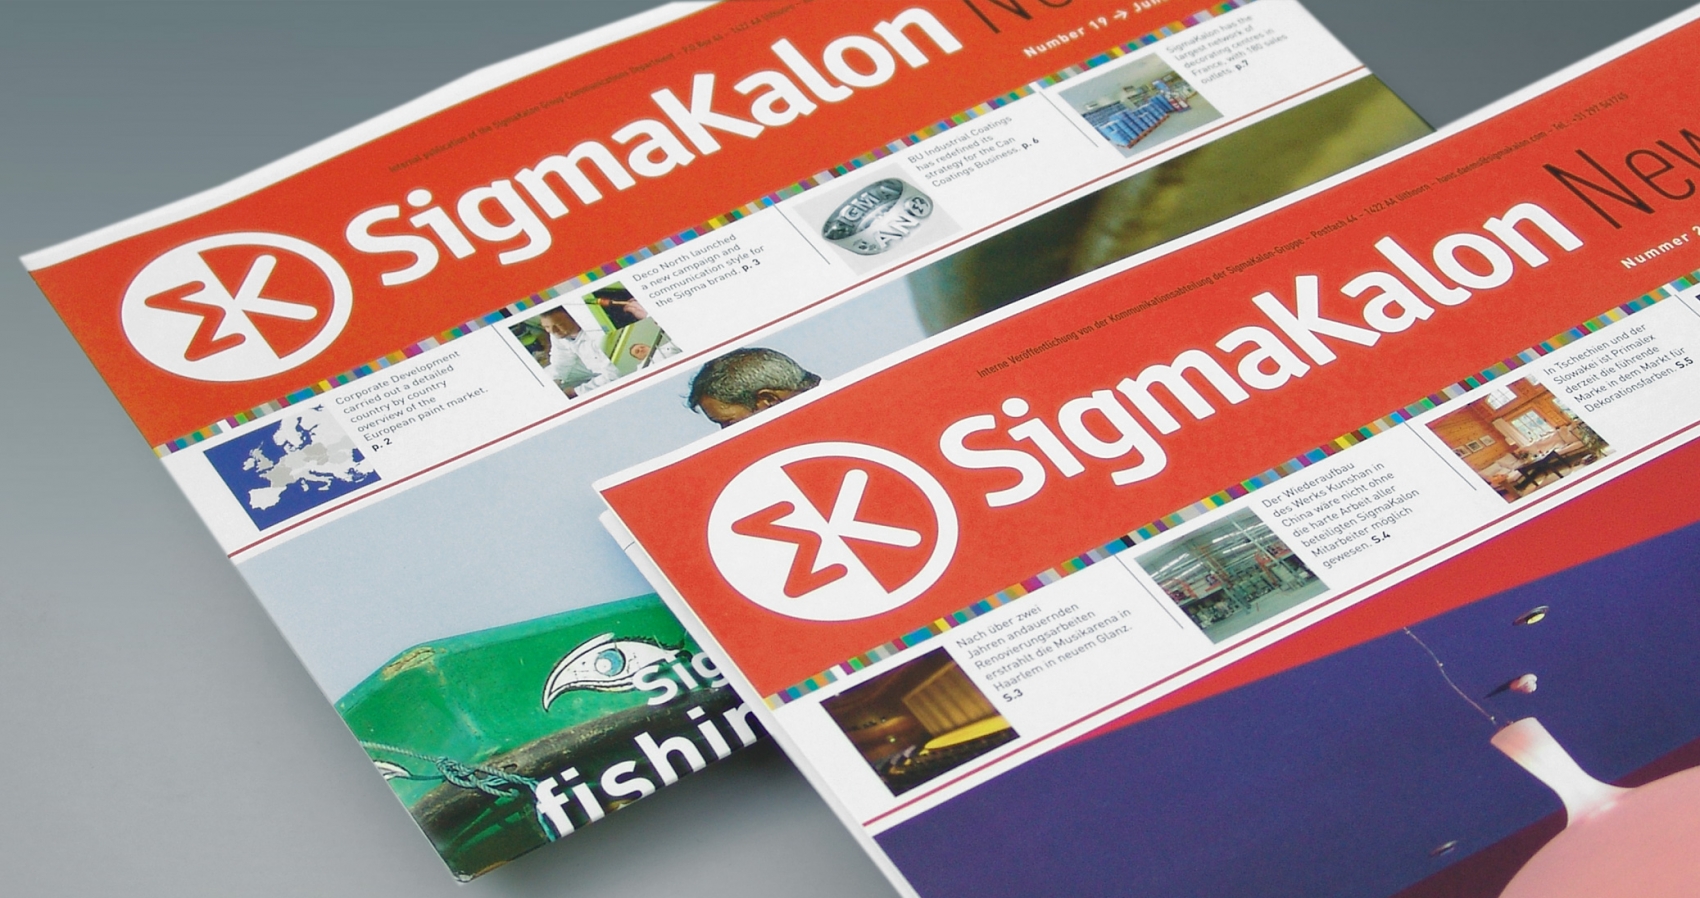 Sigmakalon - Newsletter